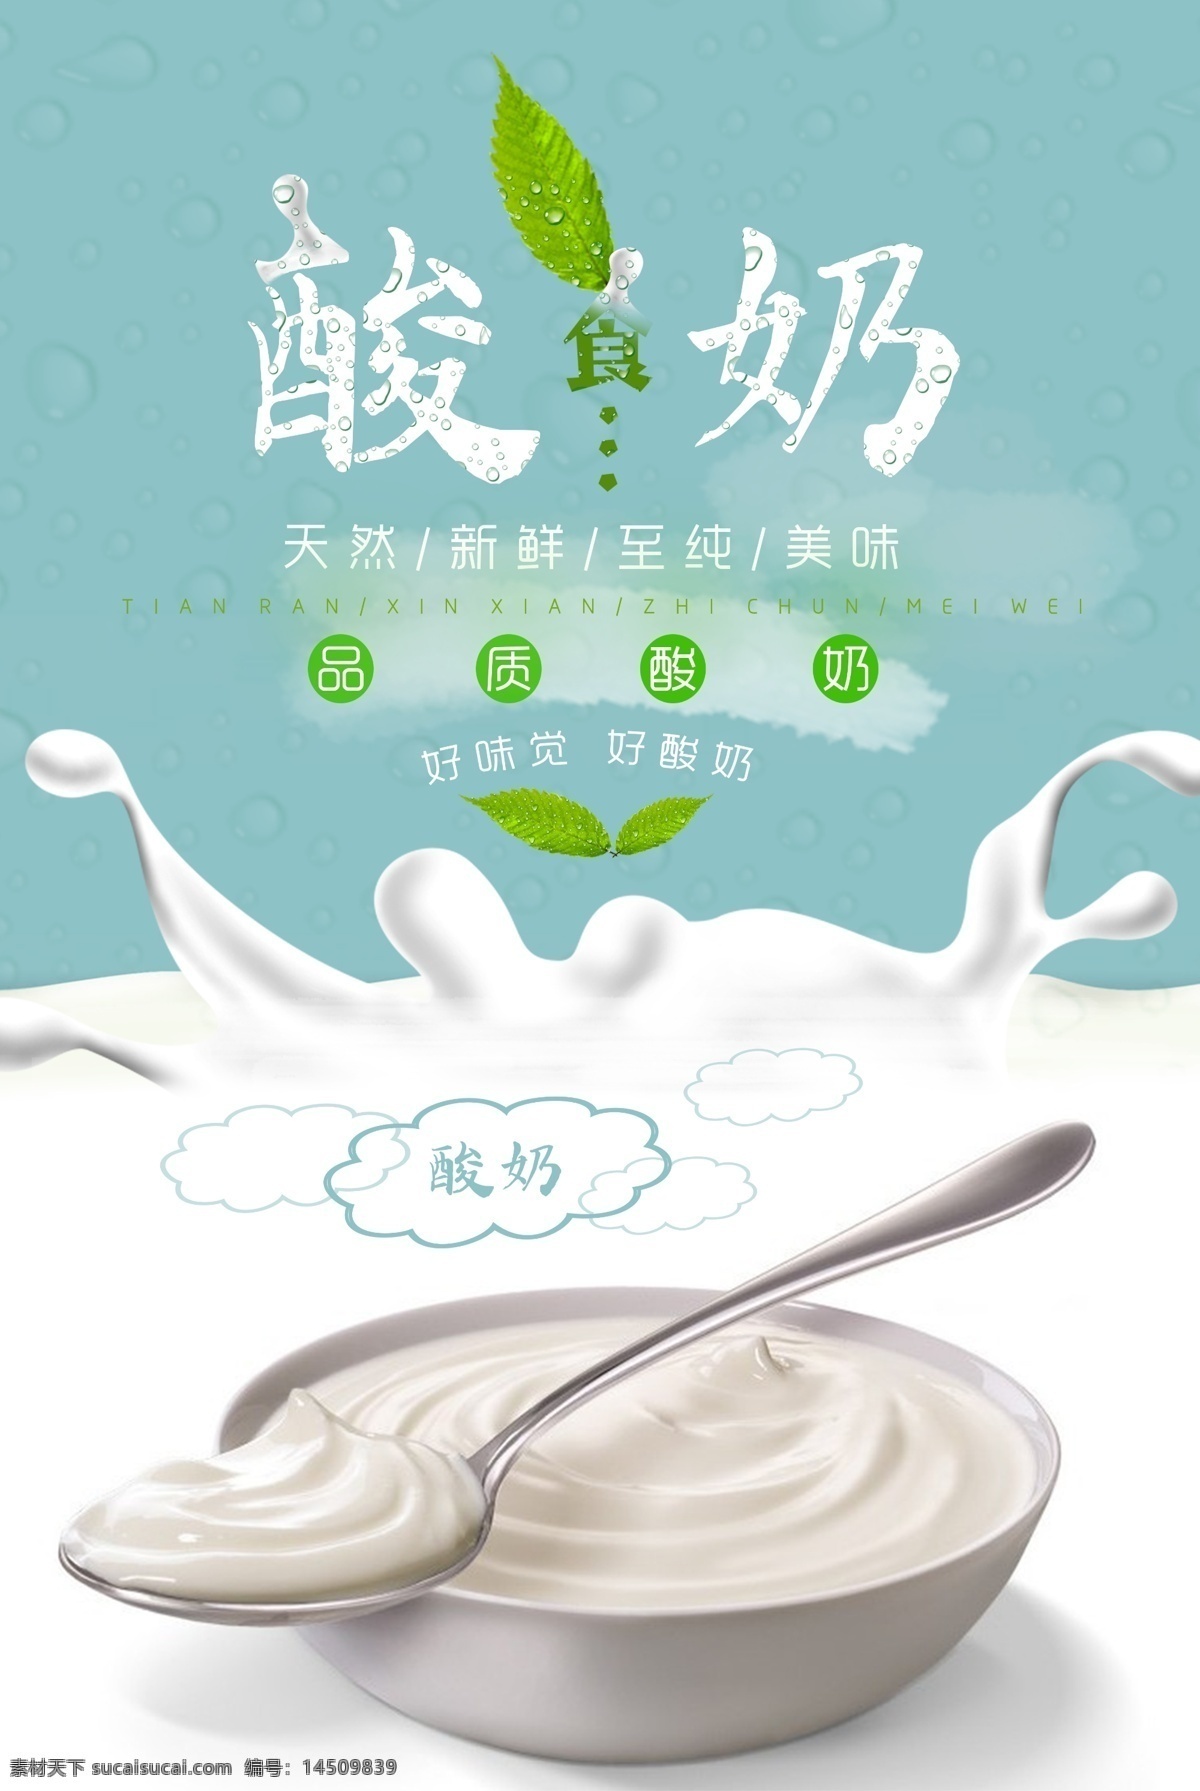 酸奶促销海报 酸奶海报 品质酸奶 酸奶 牛奶 蓝色酸奶背景